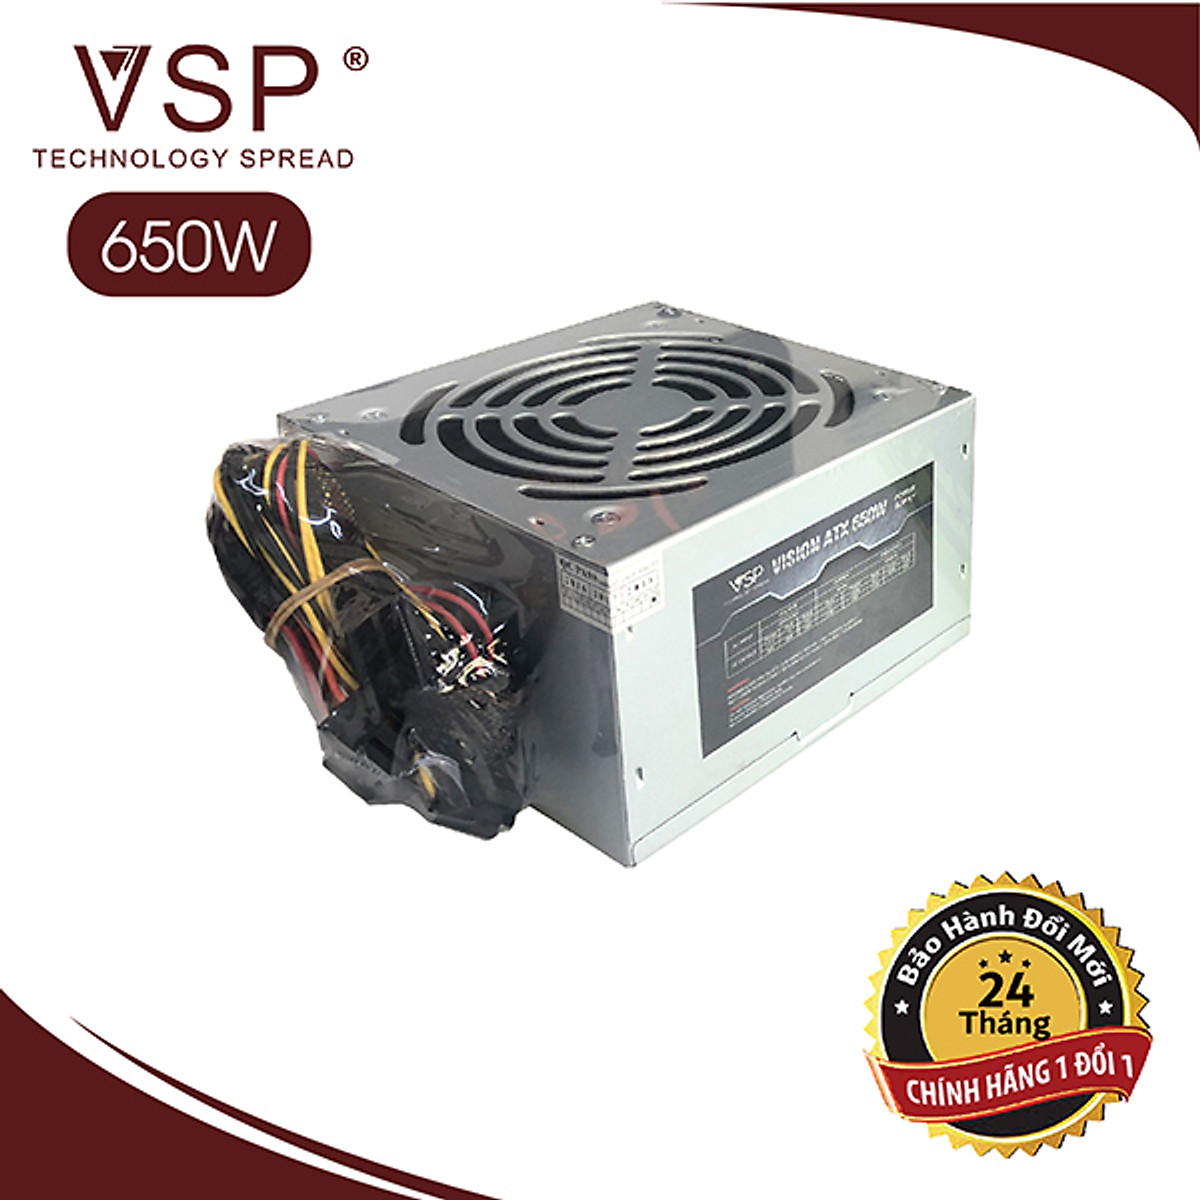 Nguồn VSP 650W Full Box HOANGNHAN (Kèm Dây Nguồn) - Hàng Chính Hãng